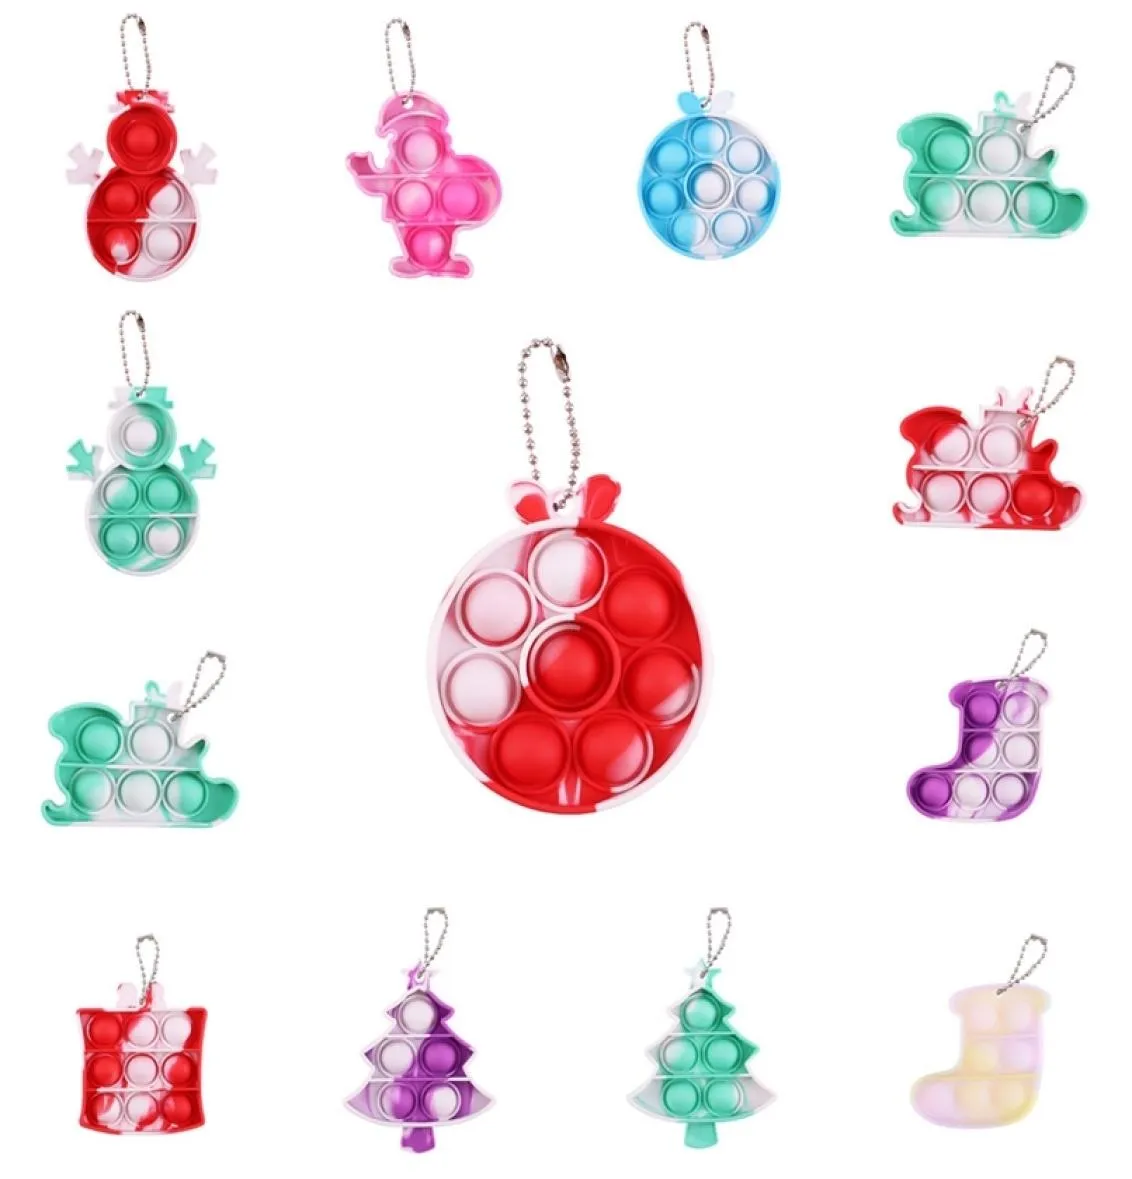 Рождественские игрушки Простой брелок для ключей Сенсорный толчок-брелок для домашних животных с пузырьками Рождественская елка Санта-Снеговик Сани-колокольчик Чулок Форма галстук-краситель Цветная доска-головоломка G90W84Y6170147